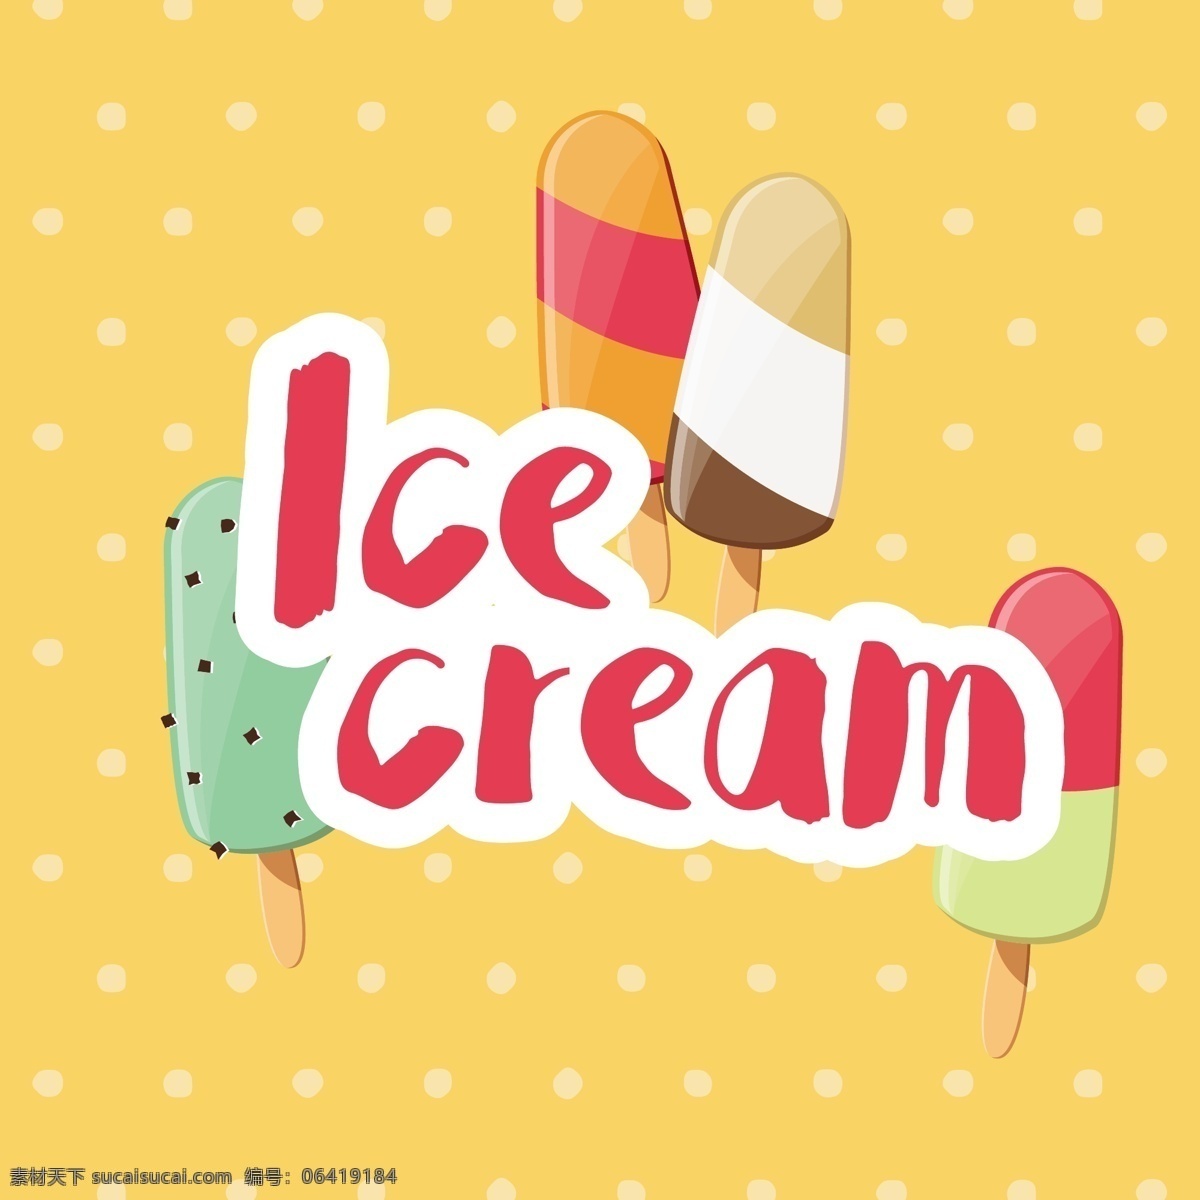 彩色 冰淇淋 背景 夏天 阳光 沙滩 壁纸 冰 假期 夏天海滩 奶油 季节 夏季 季节性 颜色